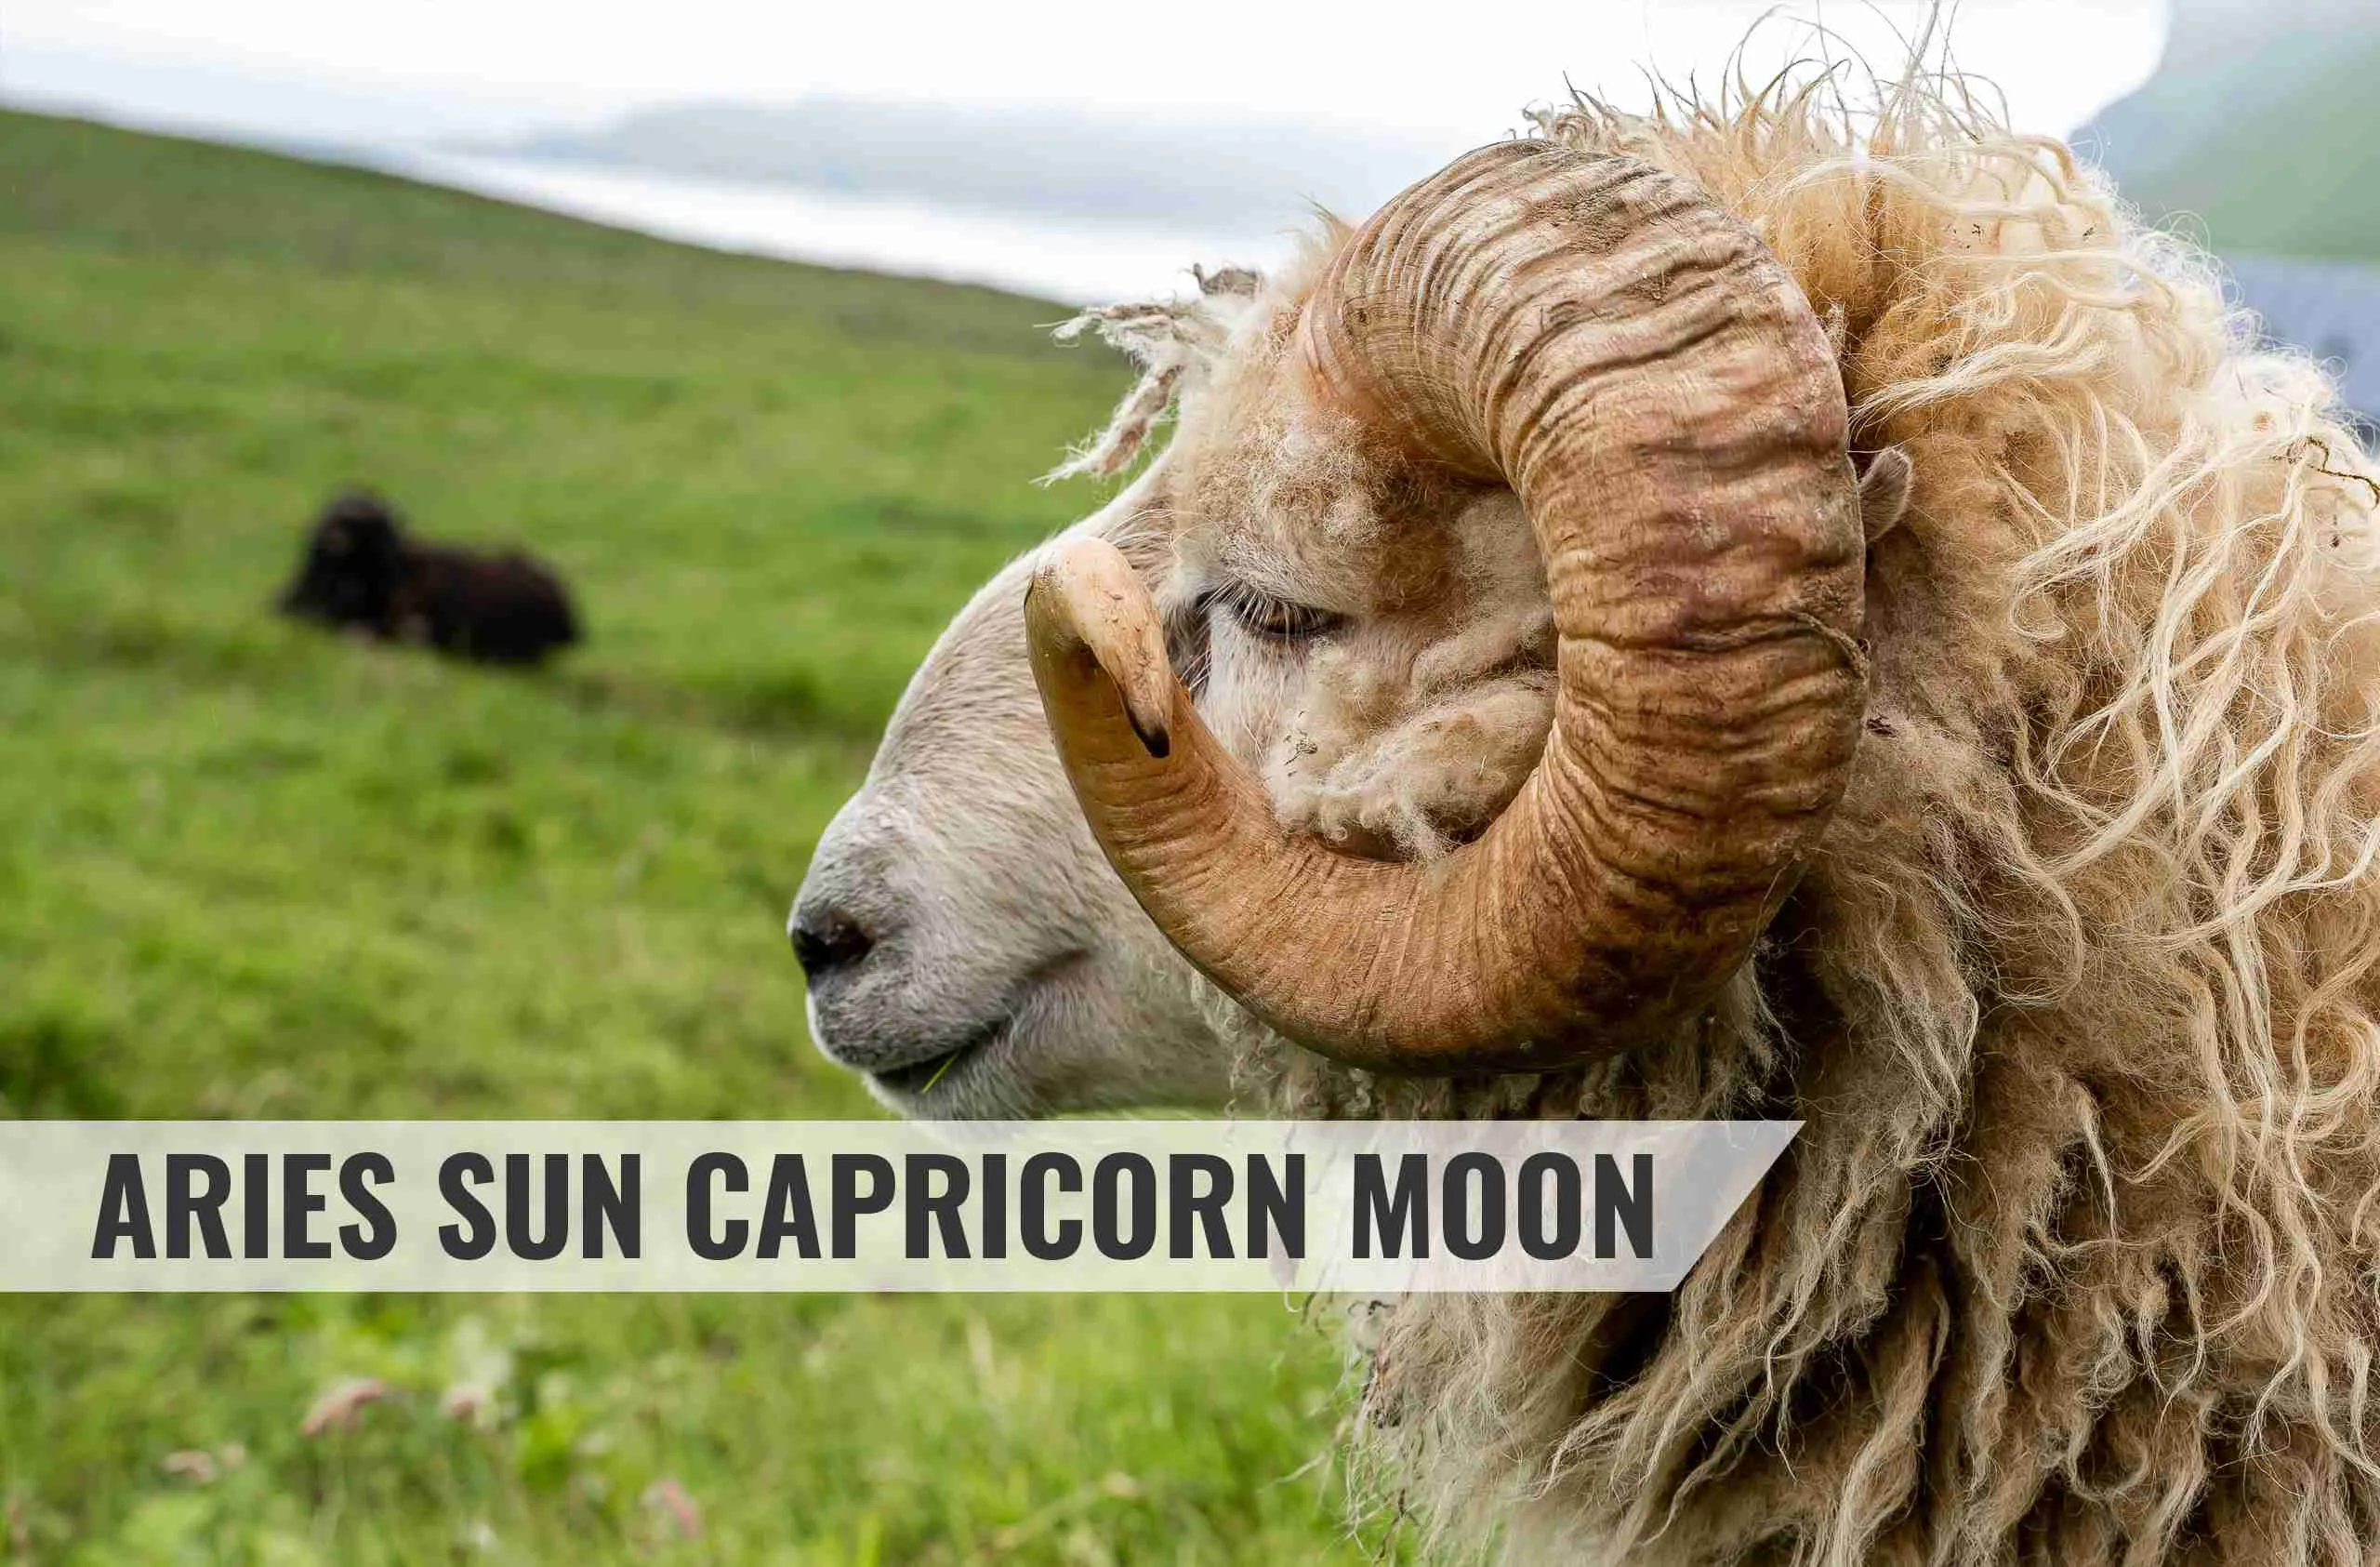 Aries Sun Capricorn Moon